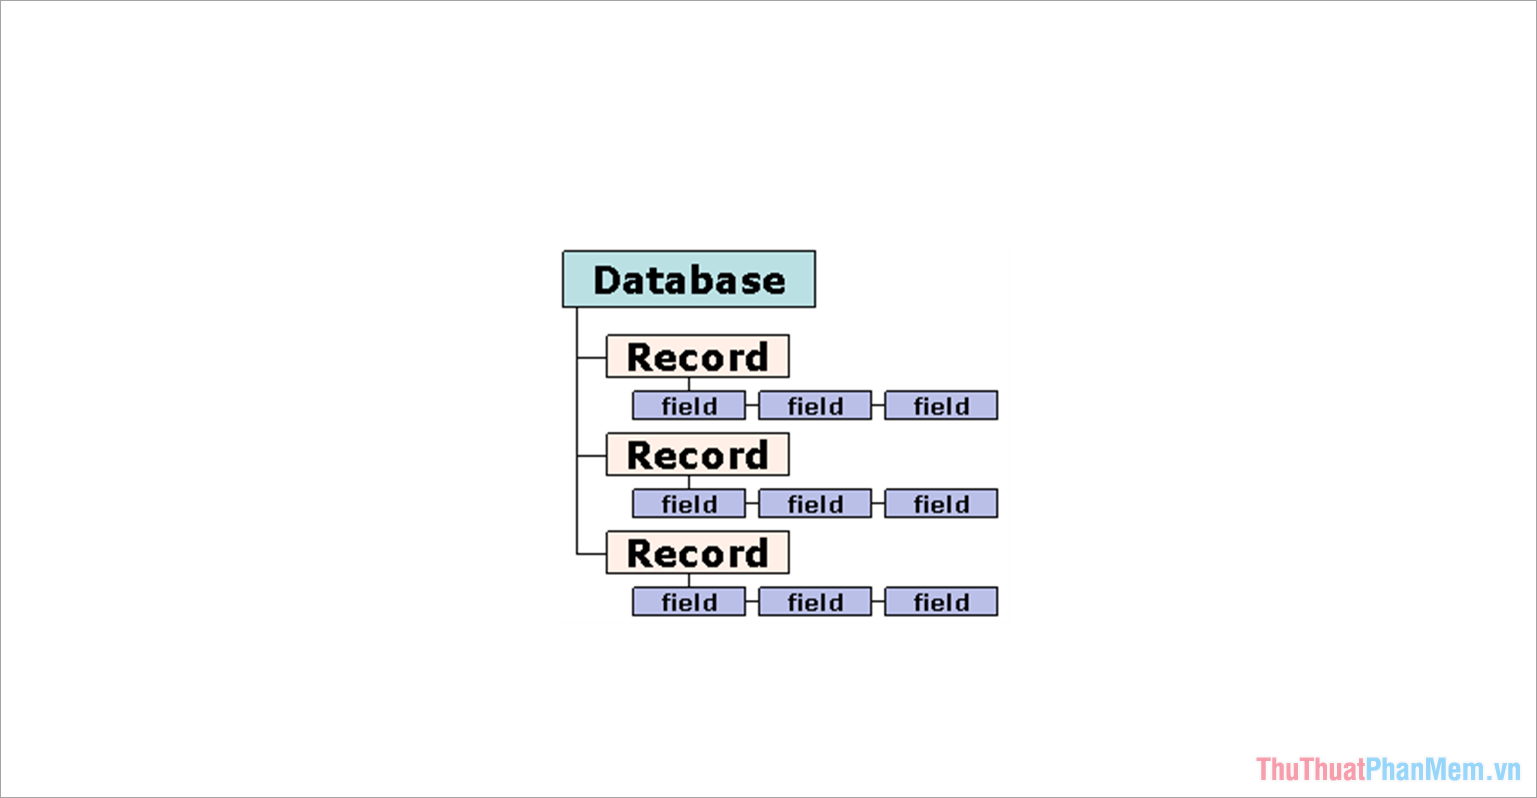 Cơ sở dữ liệu quan hệ - Cơ sở dữ liệu chịu trách nhiệm tổ chức dữ liệu thành các tập hợp các bản ghi cơ sở dữ liệu